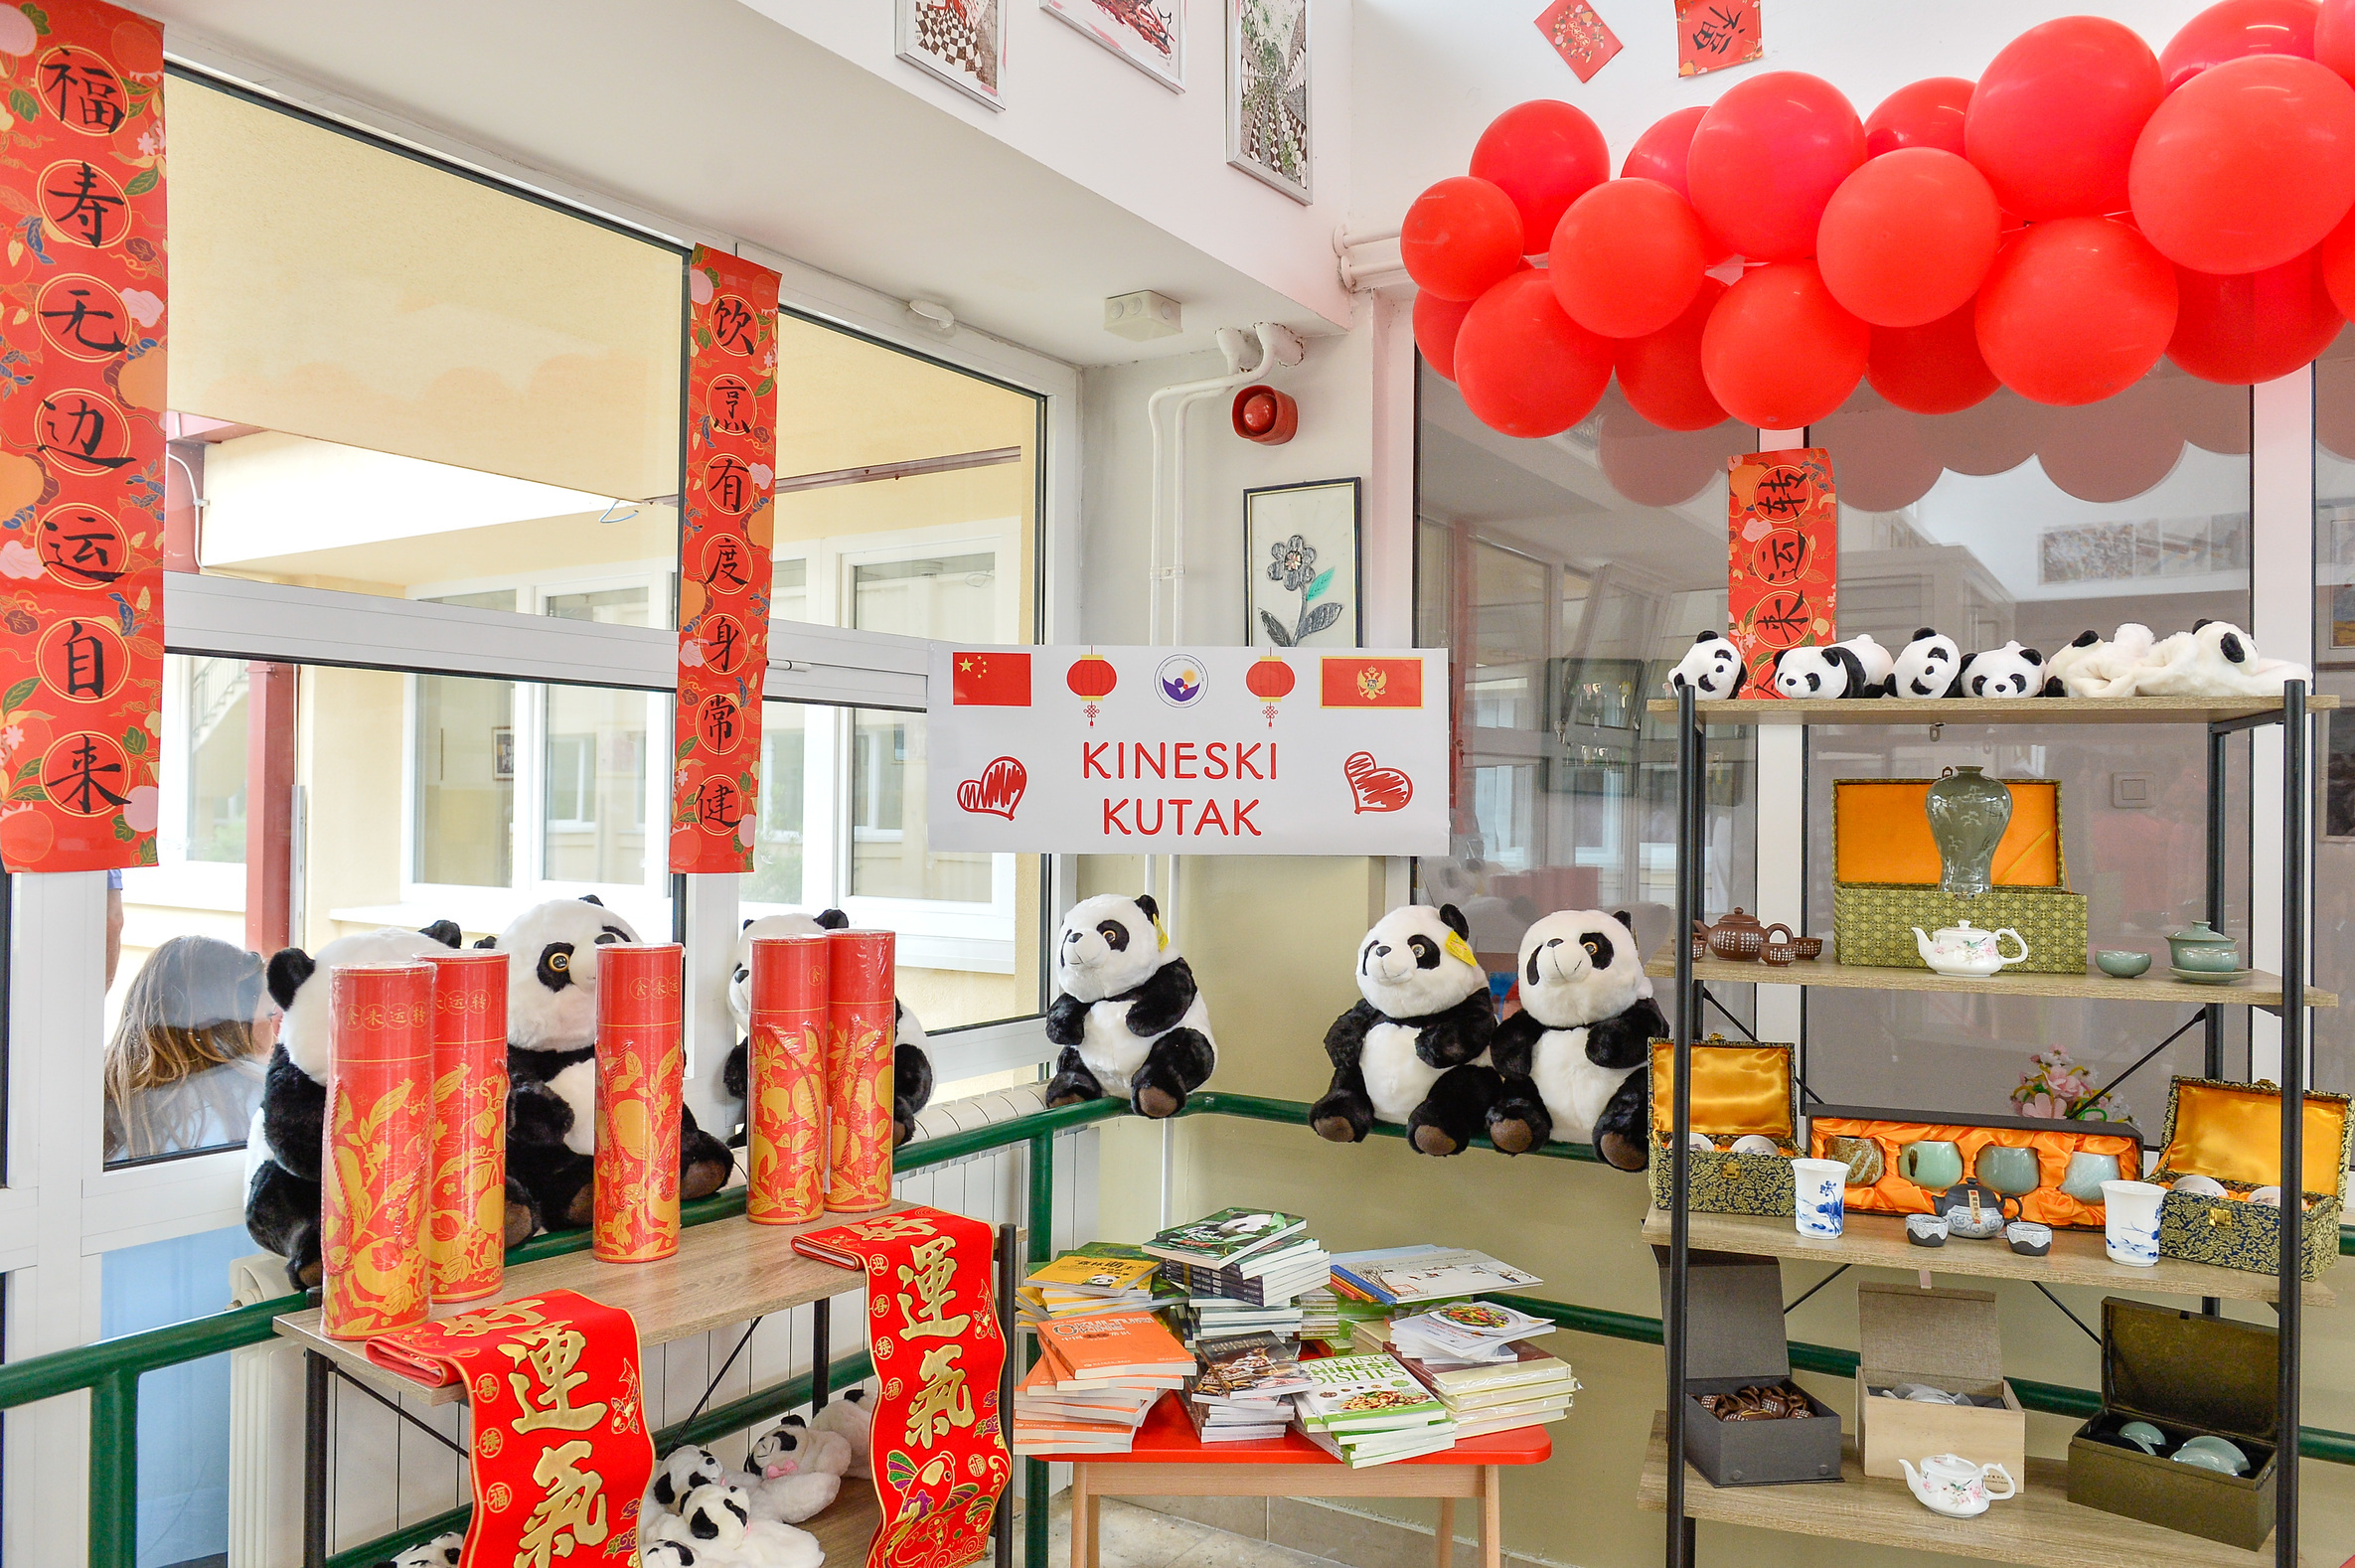 Proslavljen Dan Resursnog Centra “1. jun”: Ambasada NR Kine otvorila “Kineski kutak” i uručila donaciju školi